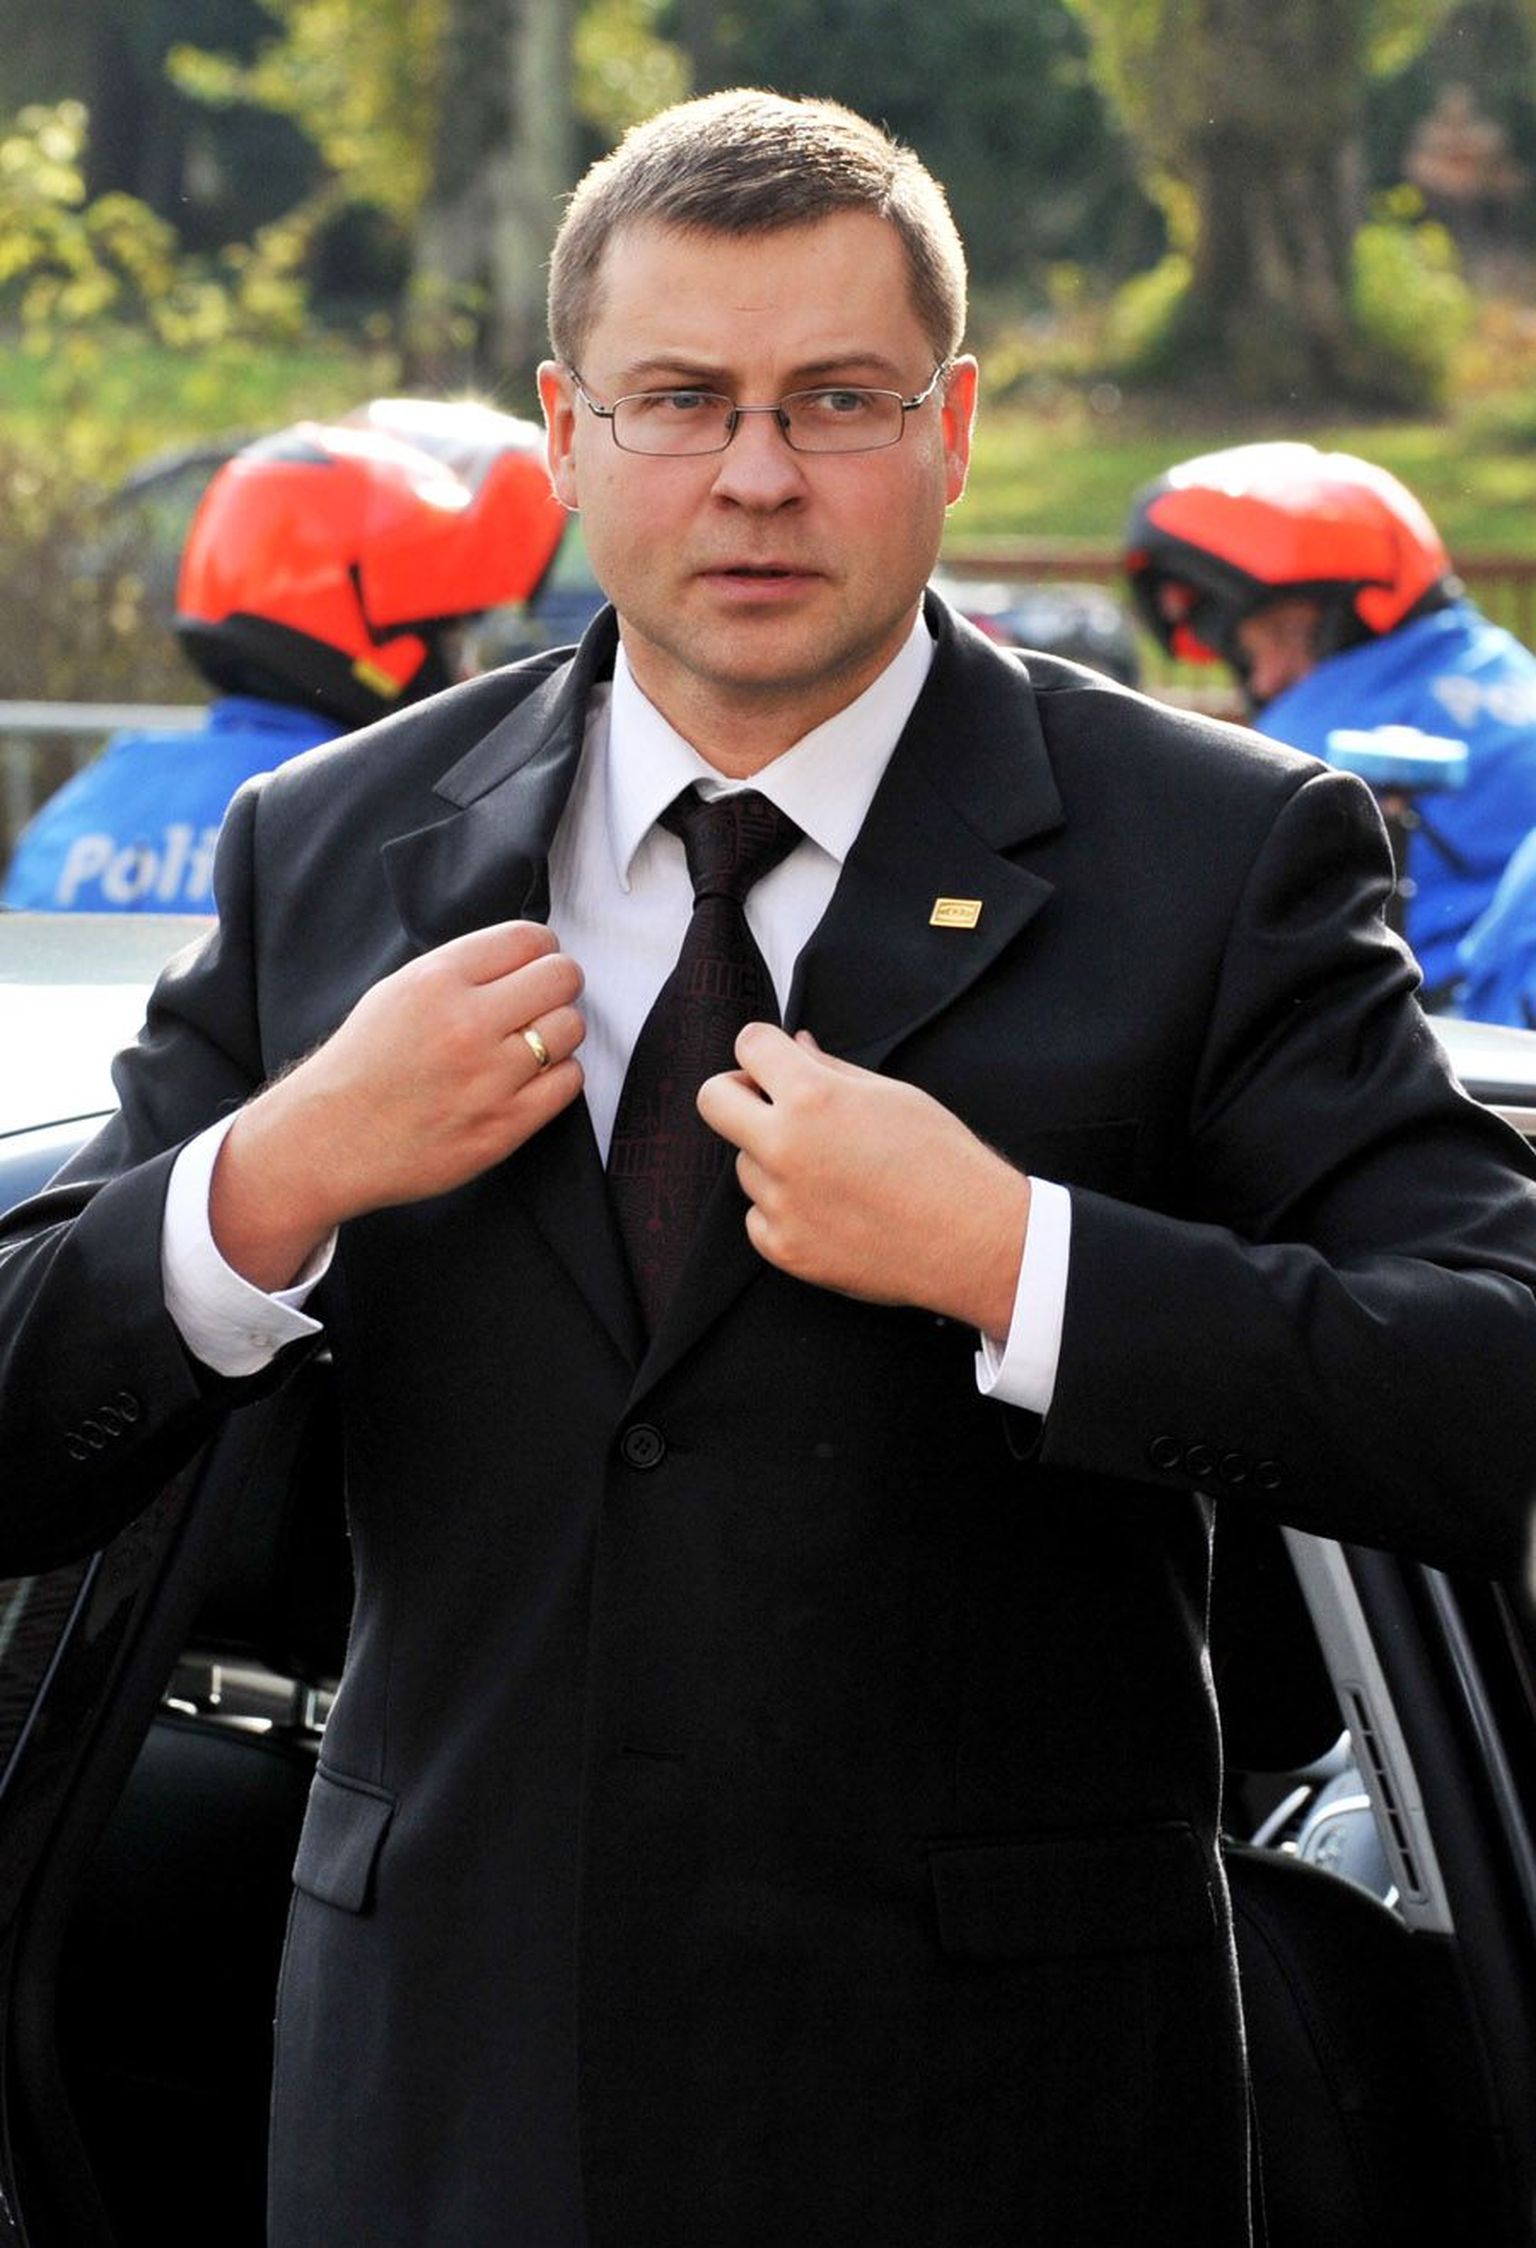 Eile kõigi parlamendierakondade uude valitsusse võtmise välja pakkunud Ühtsuse liider Valdis Dombrovskis ei varjanud, et küsimus on tegelikult nende partei soovis kaasata rahvuslased, mitte venelased.